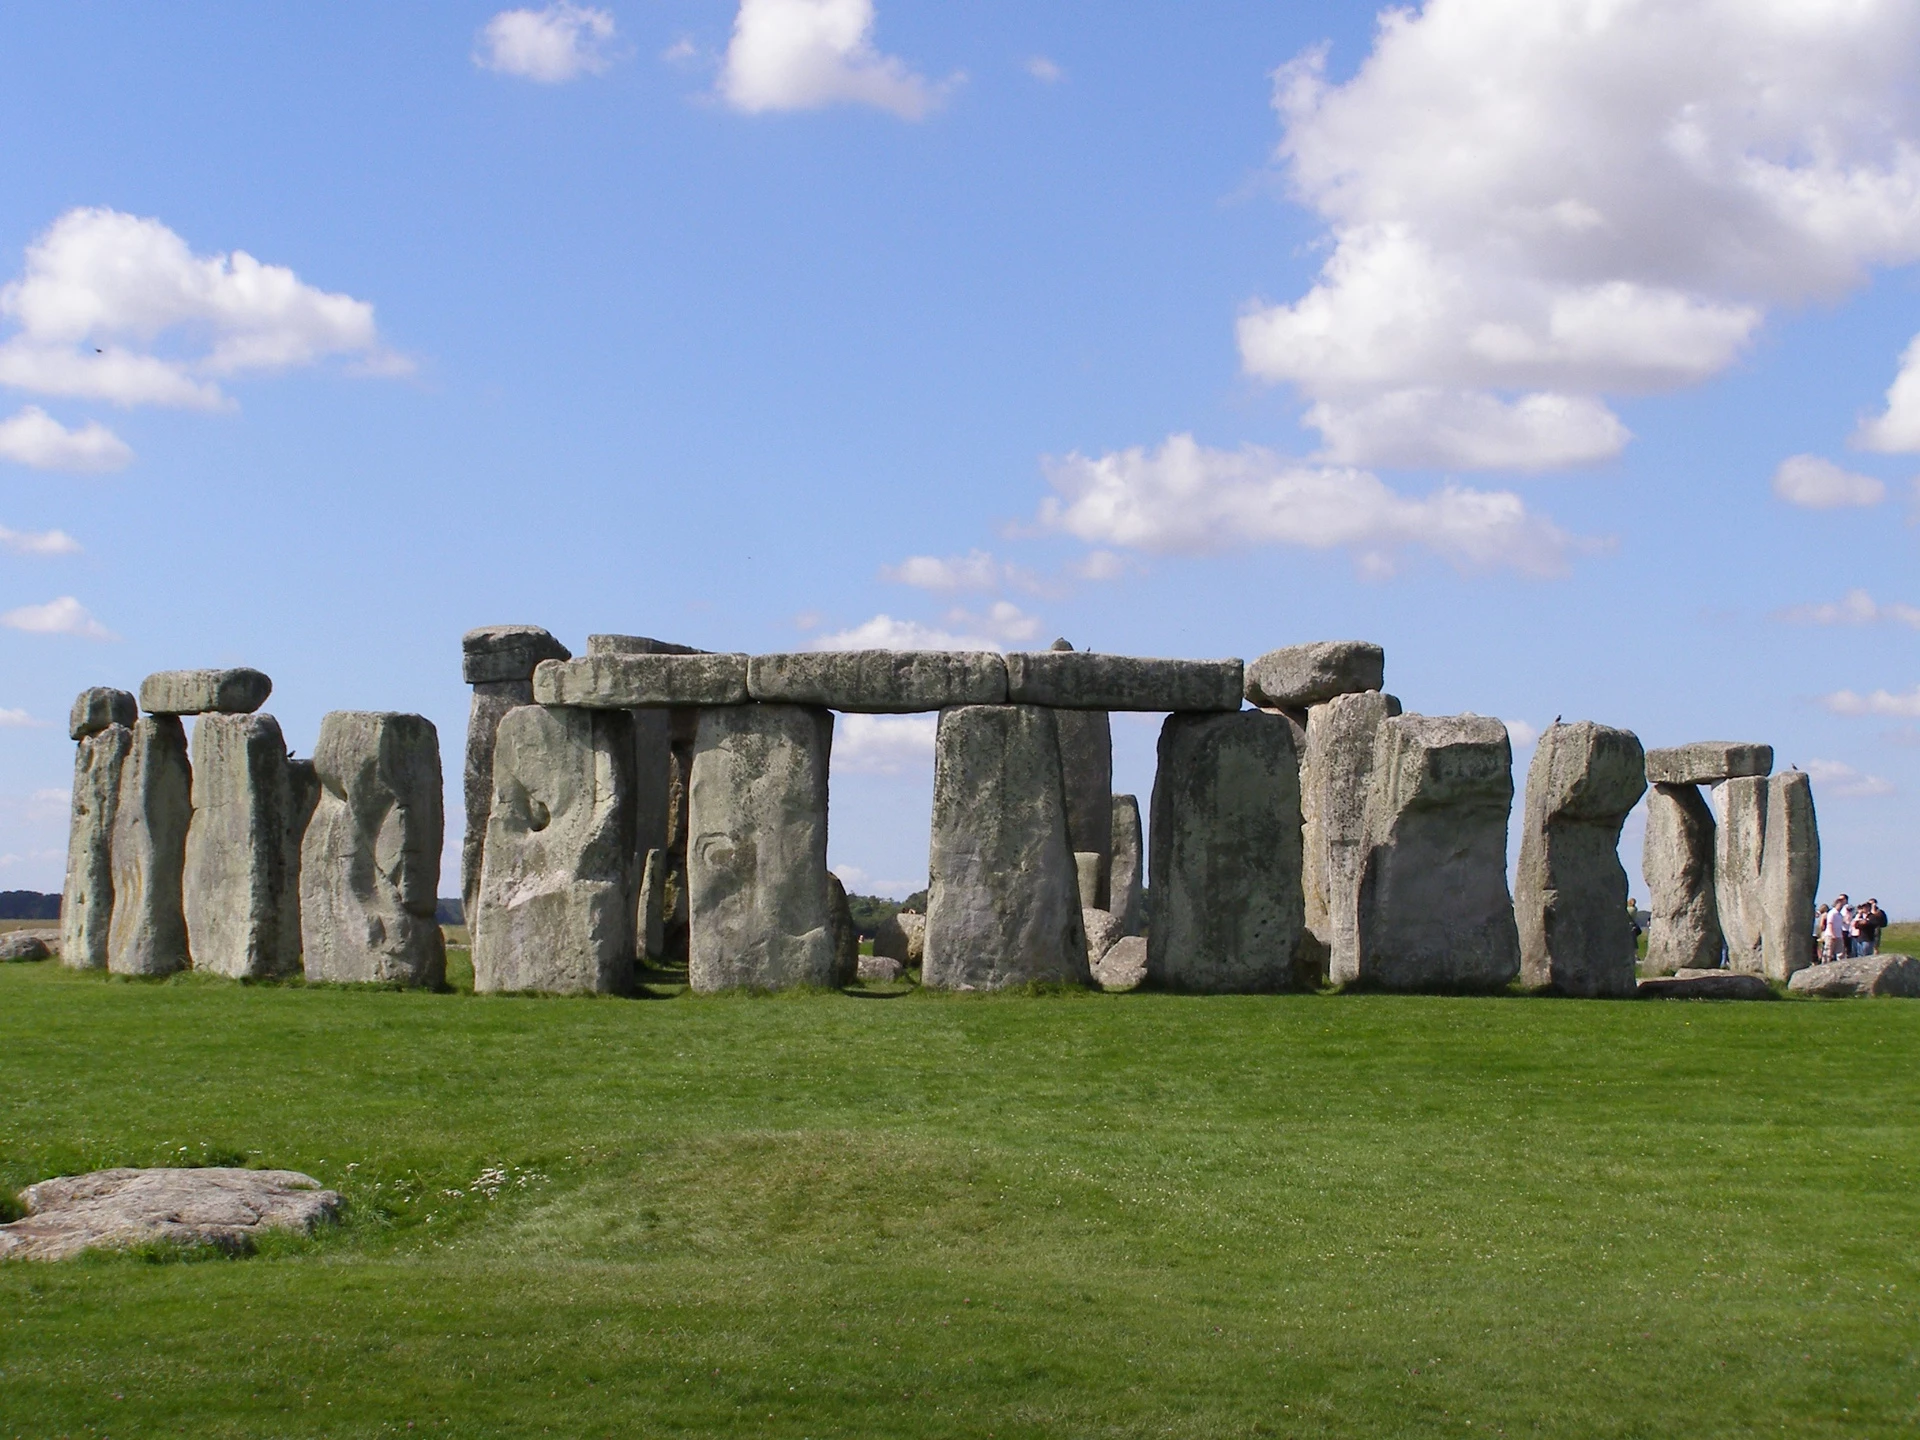 Stonehenge (Anh): Đây là một di tích tiền sử nằm tại Wiltshire (Anh), gồm vòng tròn nhiều cổng đá cao khoảng 4 m, rộng 2,1 m và nặng khoảng 25 tấn. Các nhà khảo cổ học tin rằng công trình được xây dựng trong giai đoạn năm 3000-2000 trước Công nguyên. Đây là một trong những địa điểm tham quan nổi tiếng nhất của Vương quốc Anh. Ảnh: Gareth Wiscombe.